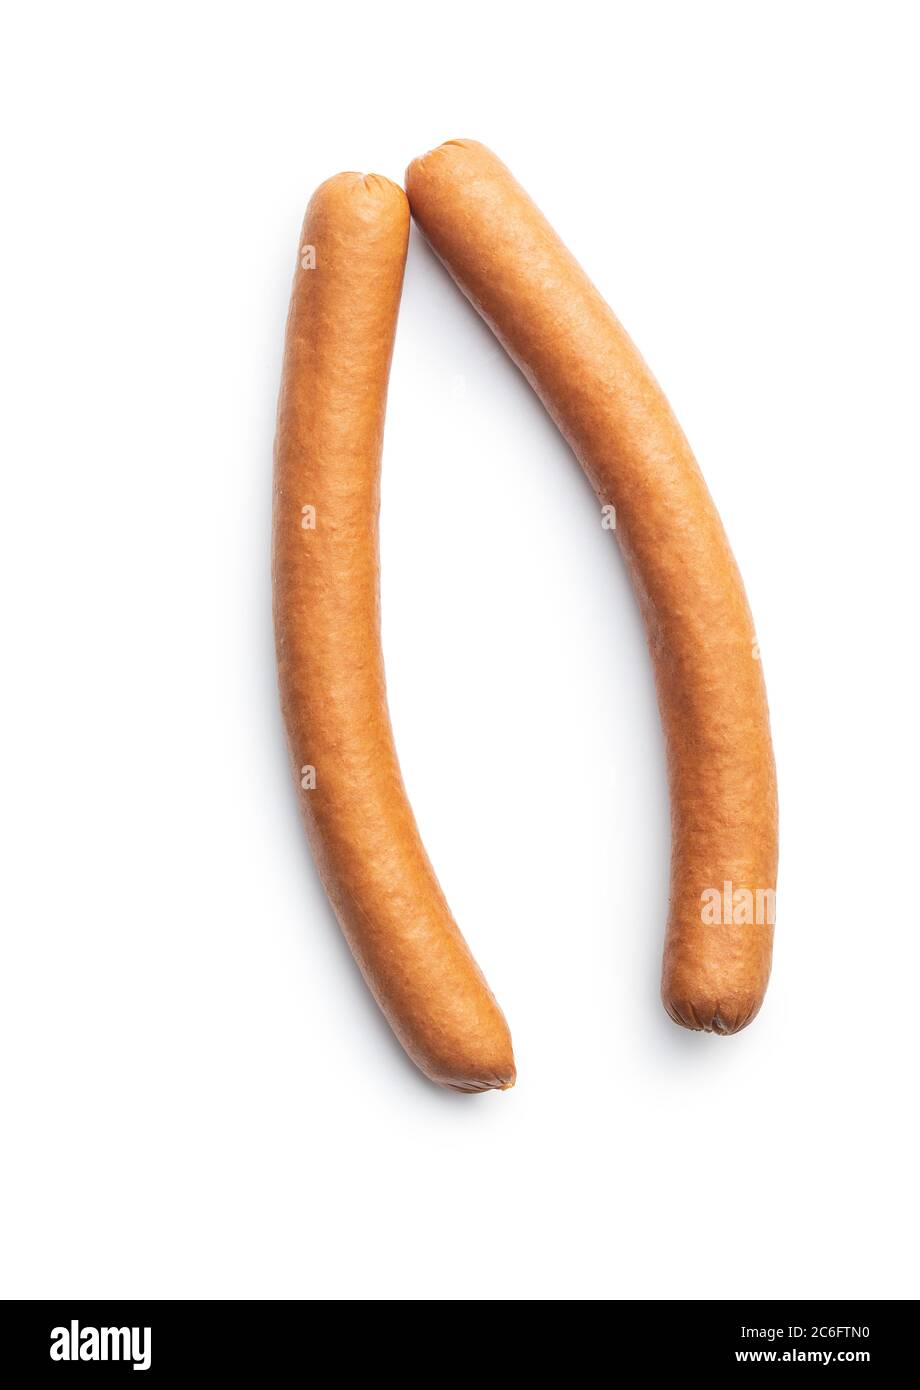 Fresh frankfurter sausages isolated on white background. Stock Photo